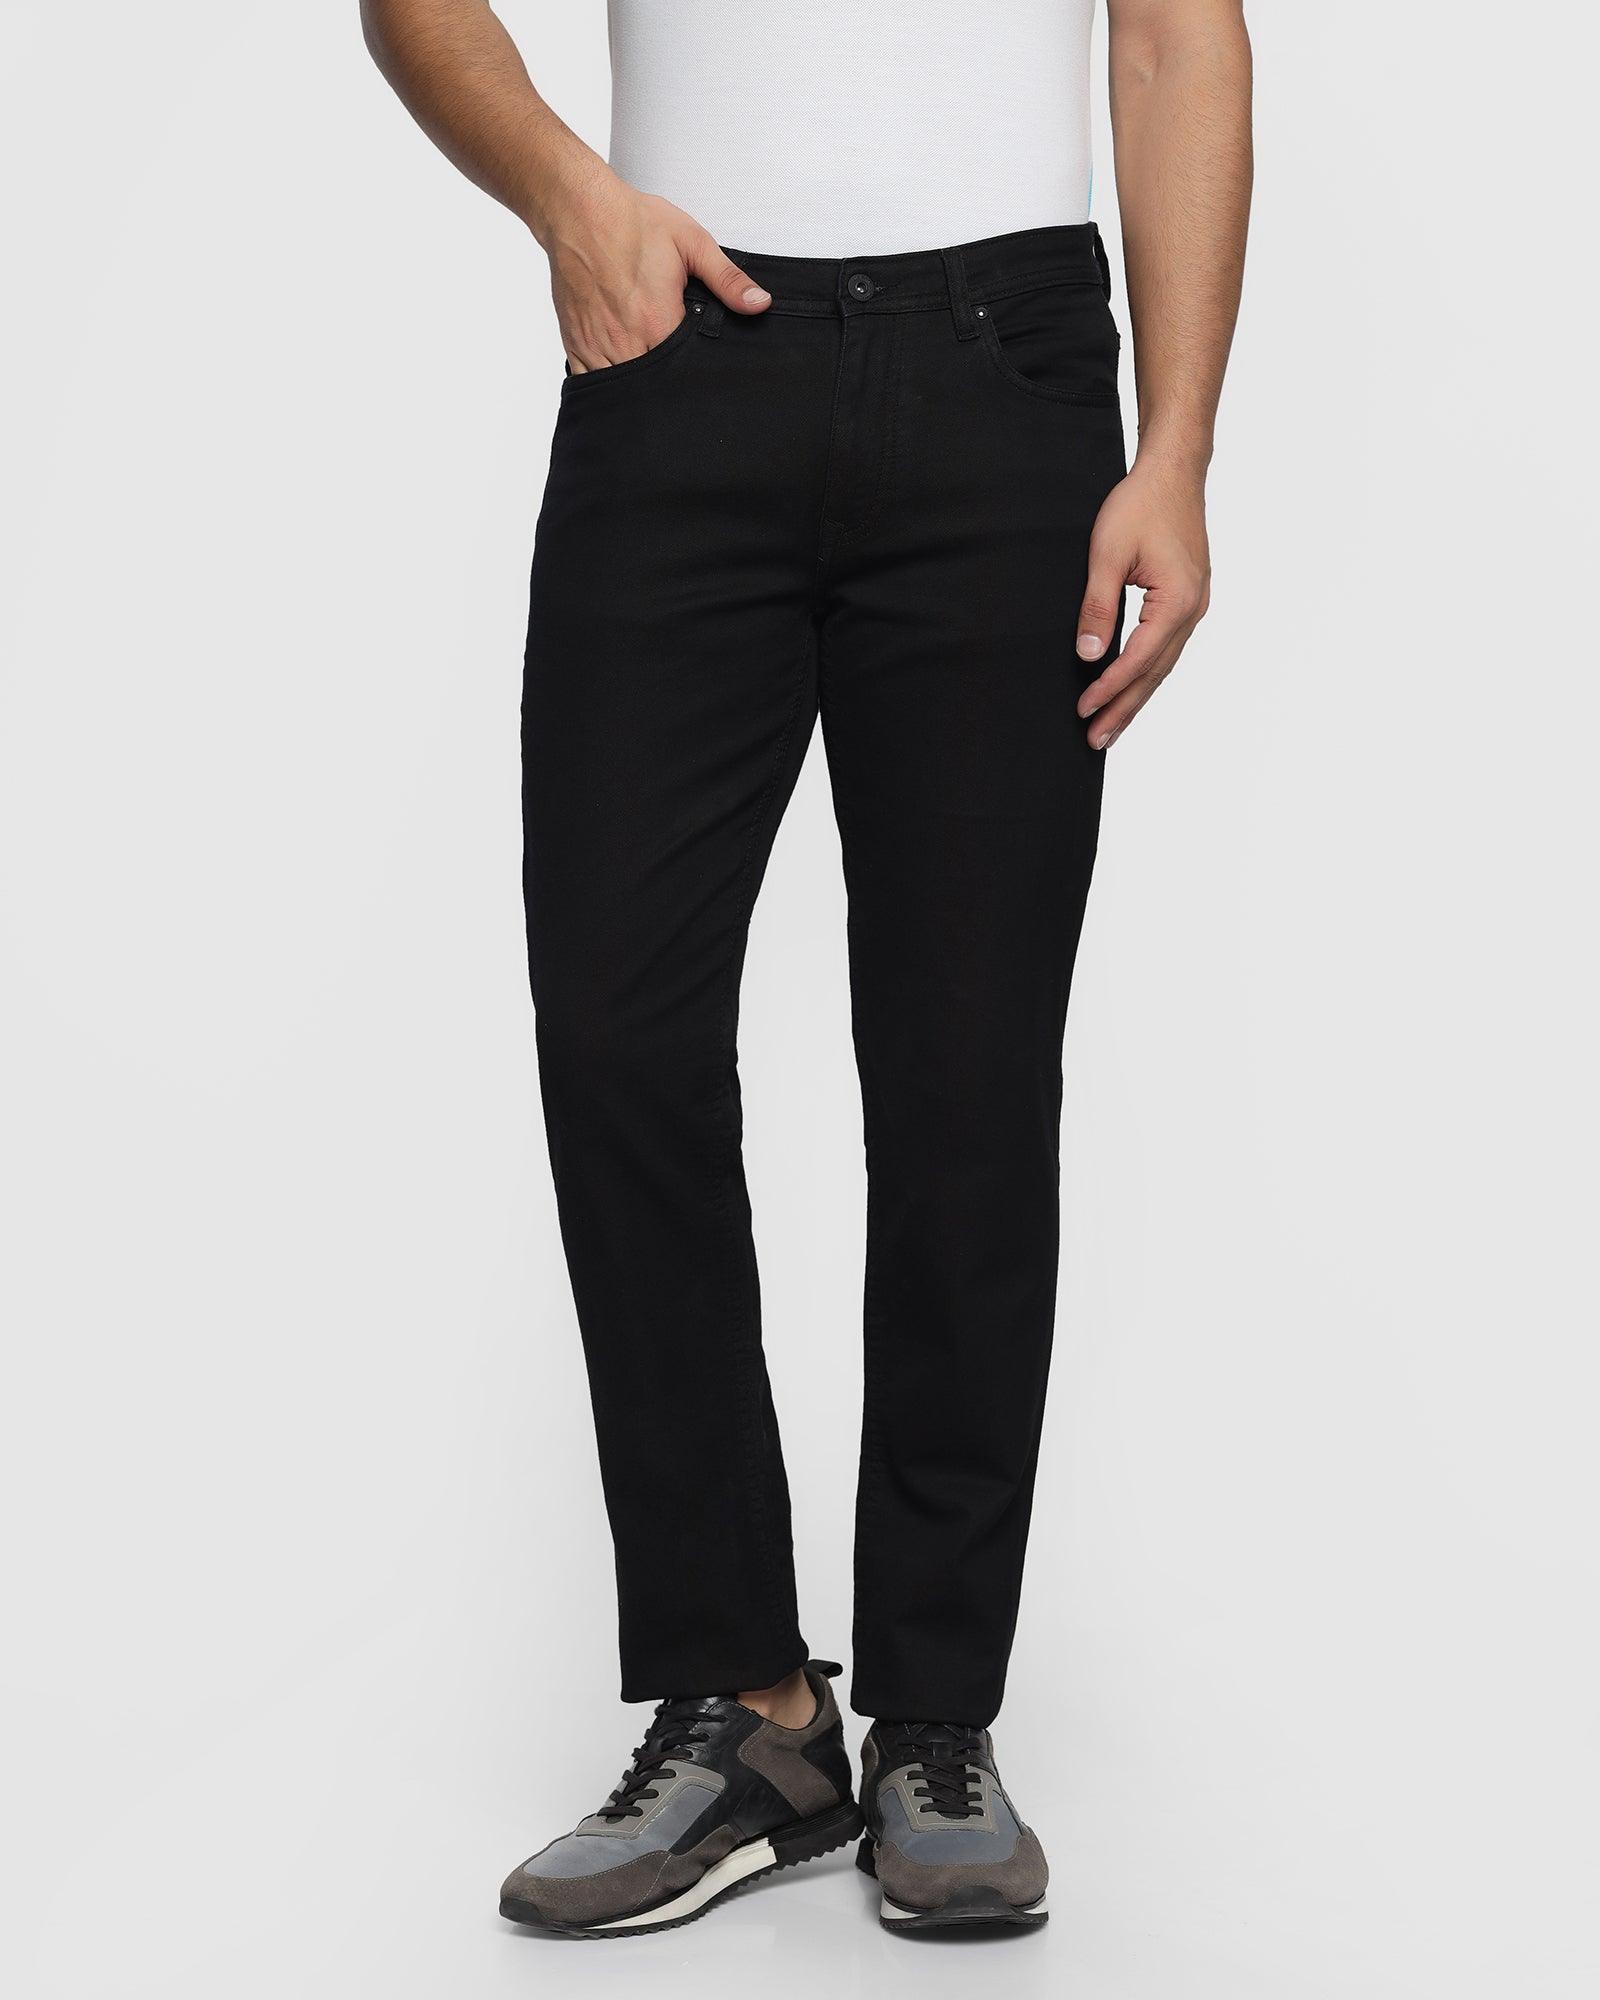 Ultrasoft Slim Comfort Buff Fit Black Jeans - Blasa